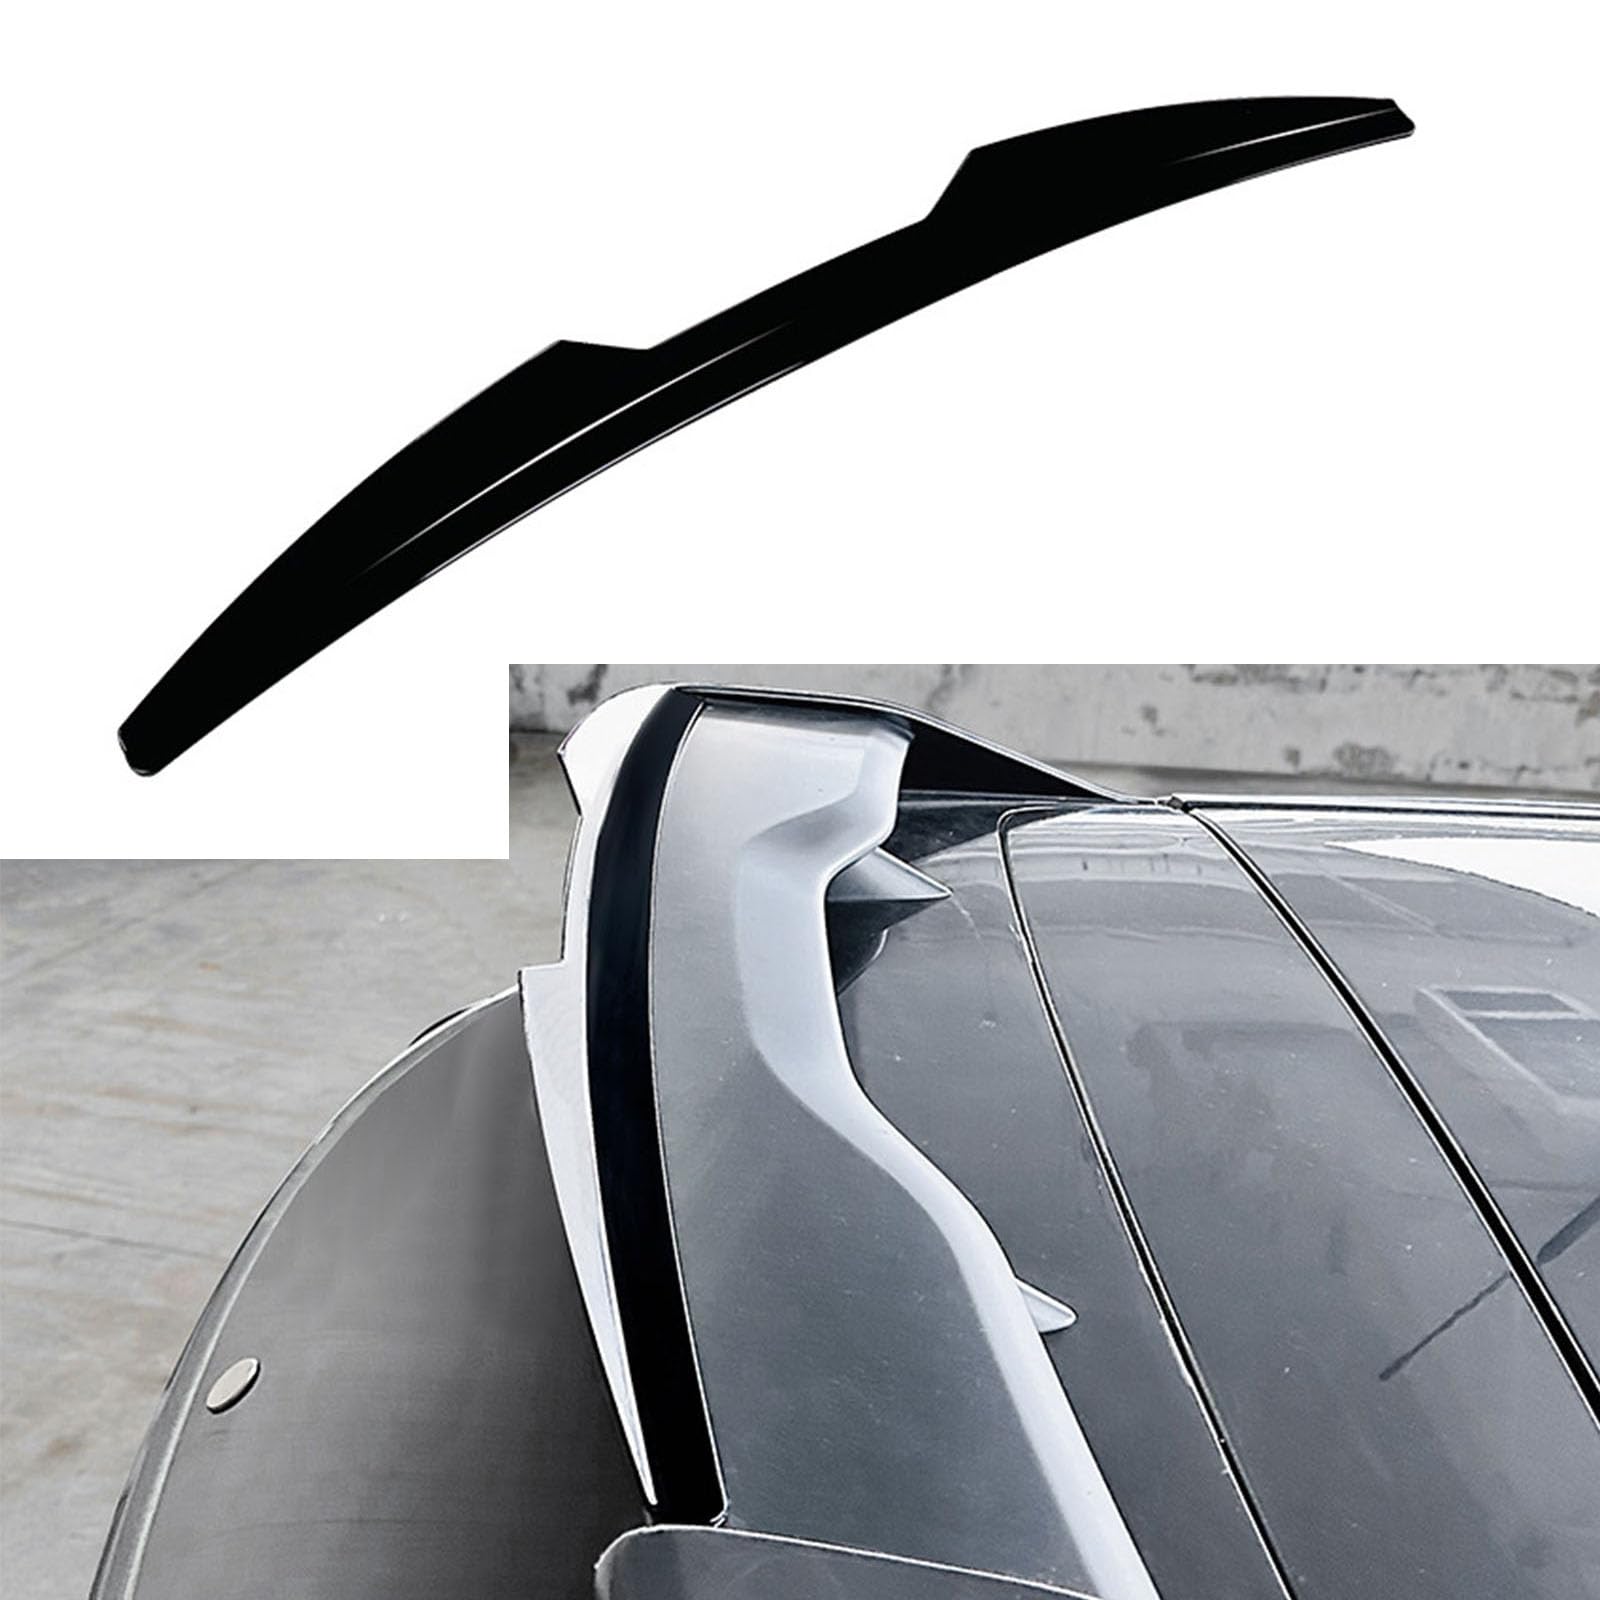 Kompatibel für Ford Focus MK3 RS 2011-2018, Auto Heckflügel Kofferraumspoiler Kofferraum Flügel Lippe Spoiler Bodykits Zubehör,A Gloss Black von YPGHBHD